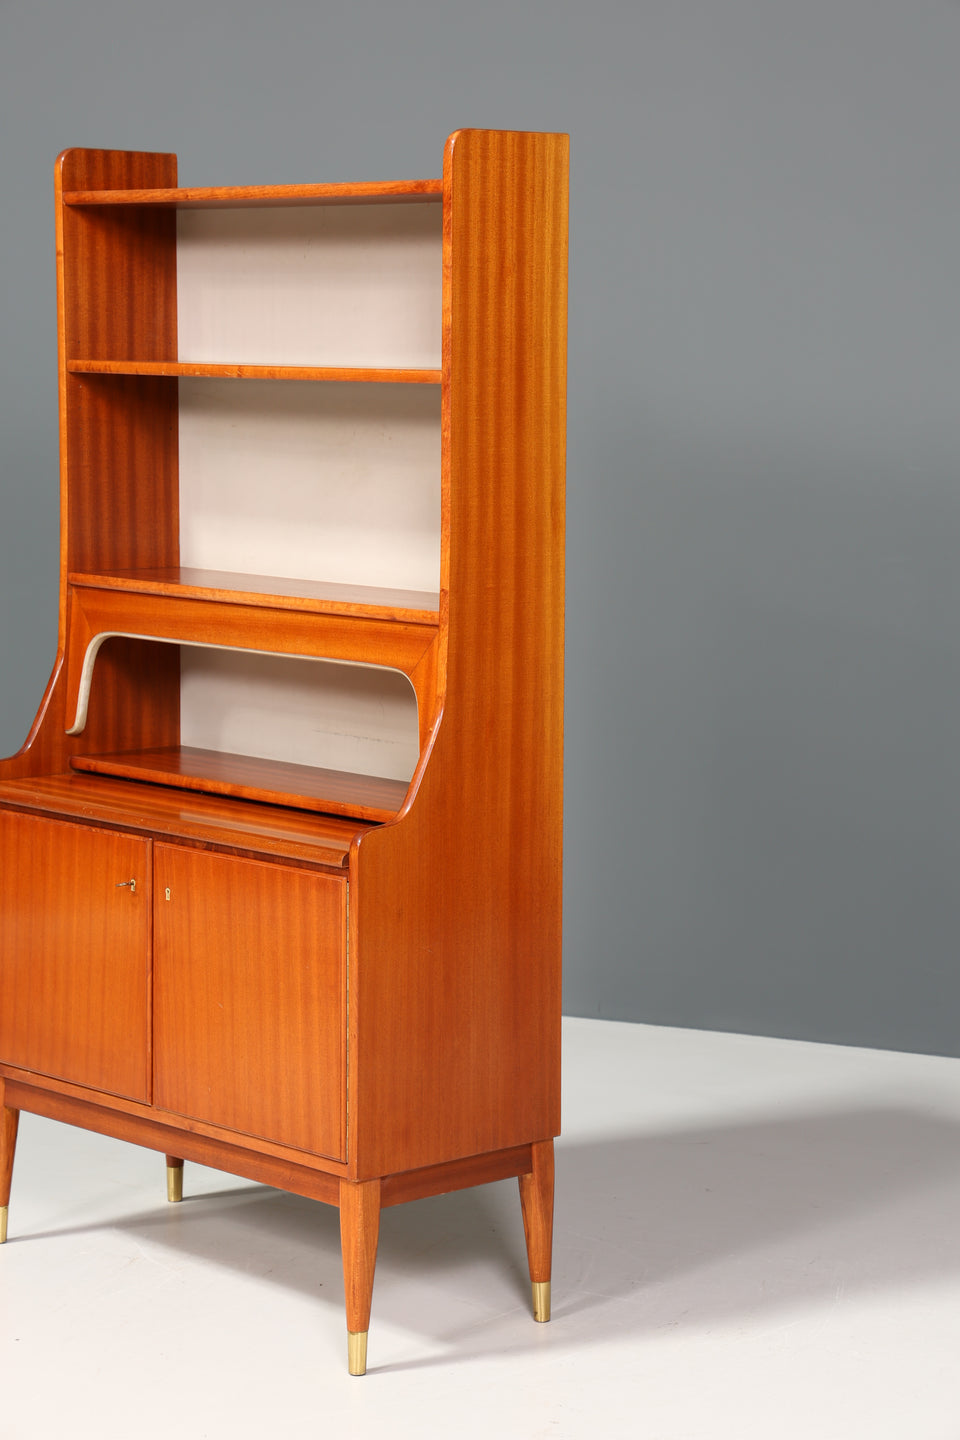 Traumhafter Mid Century Schrank Sekretär Bücherregal Retro Highboard Vintage Holz Regal 70er Jahre